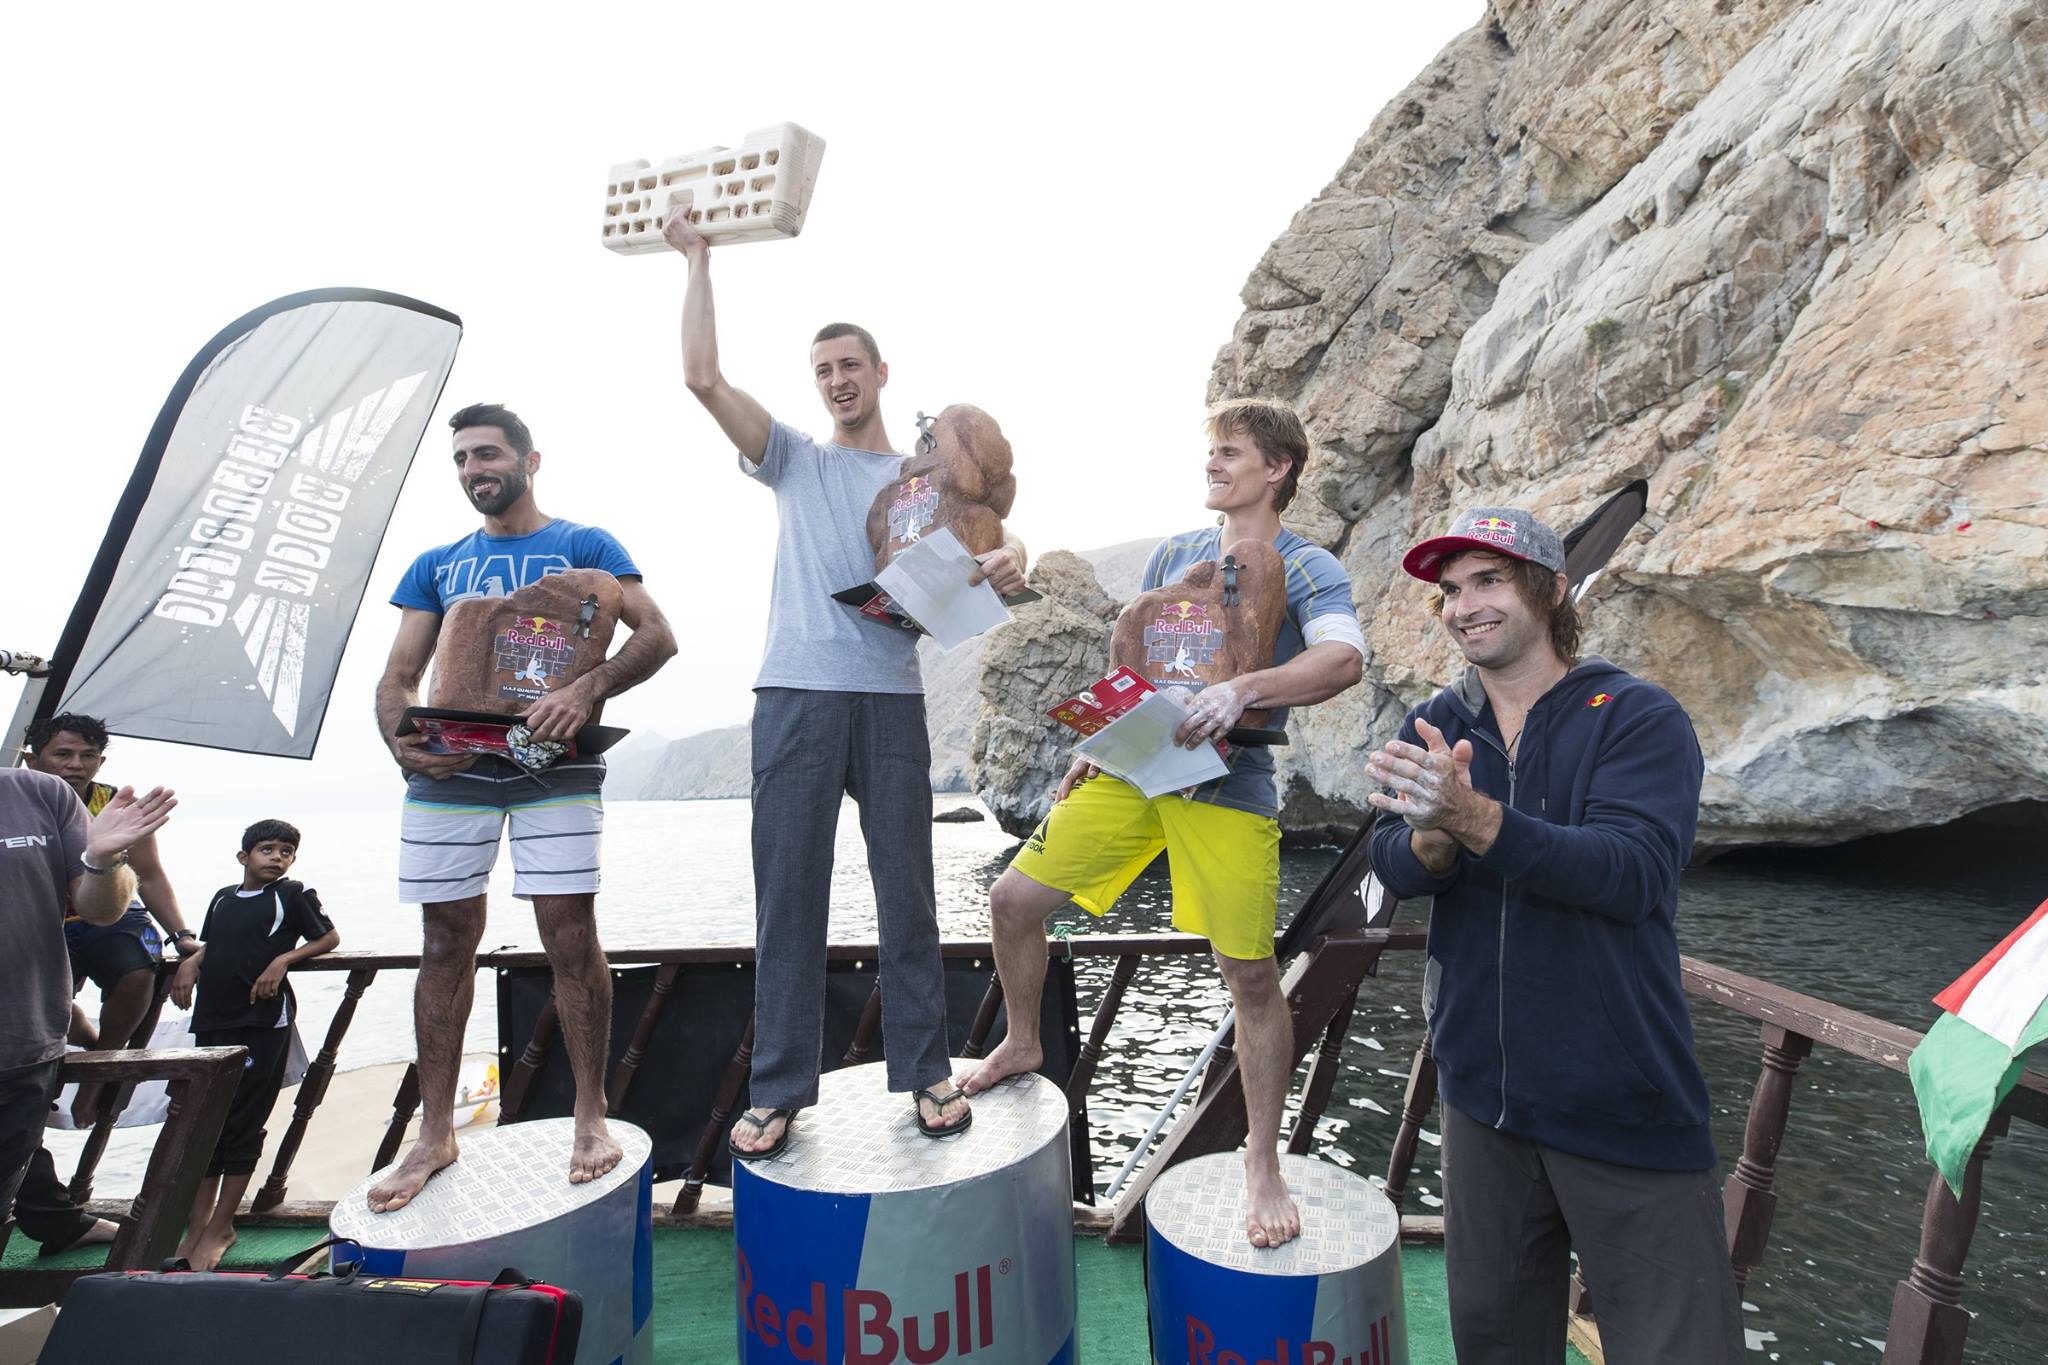 Юрий Володько  - победитель первого скалолазного фестиваля Red Bull Psicobloc, который проходил в Диббе (провинция Мусандам, Оман).